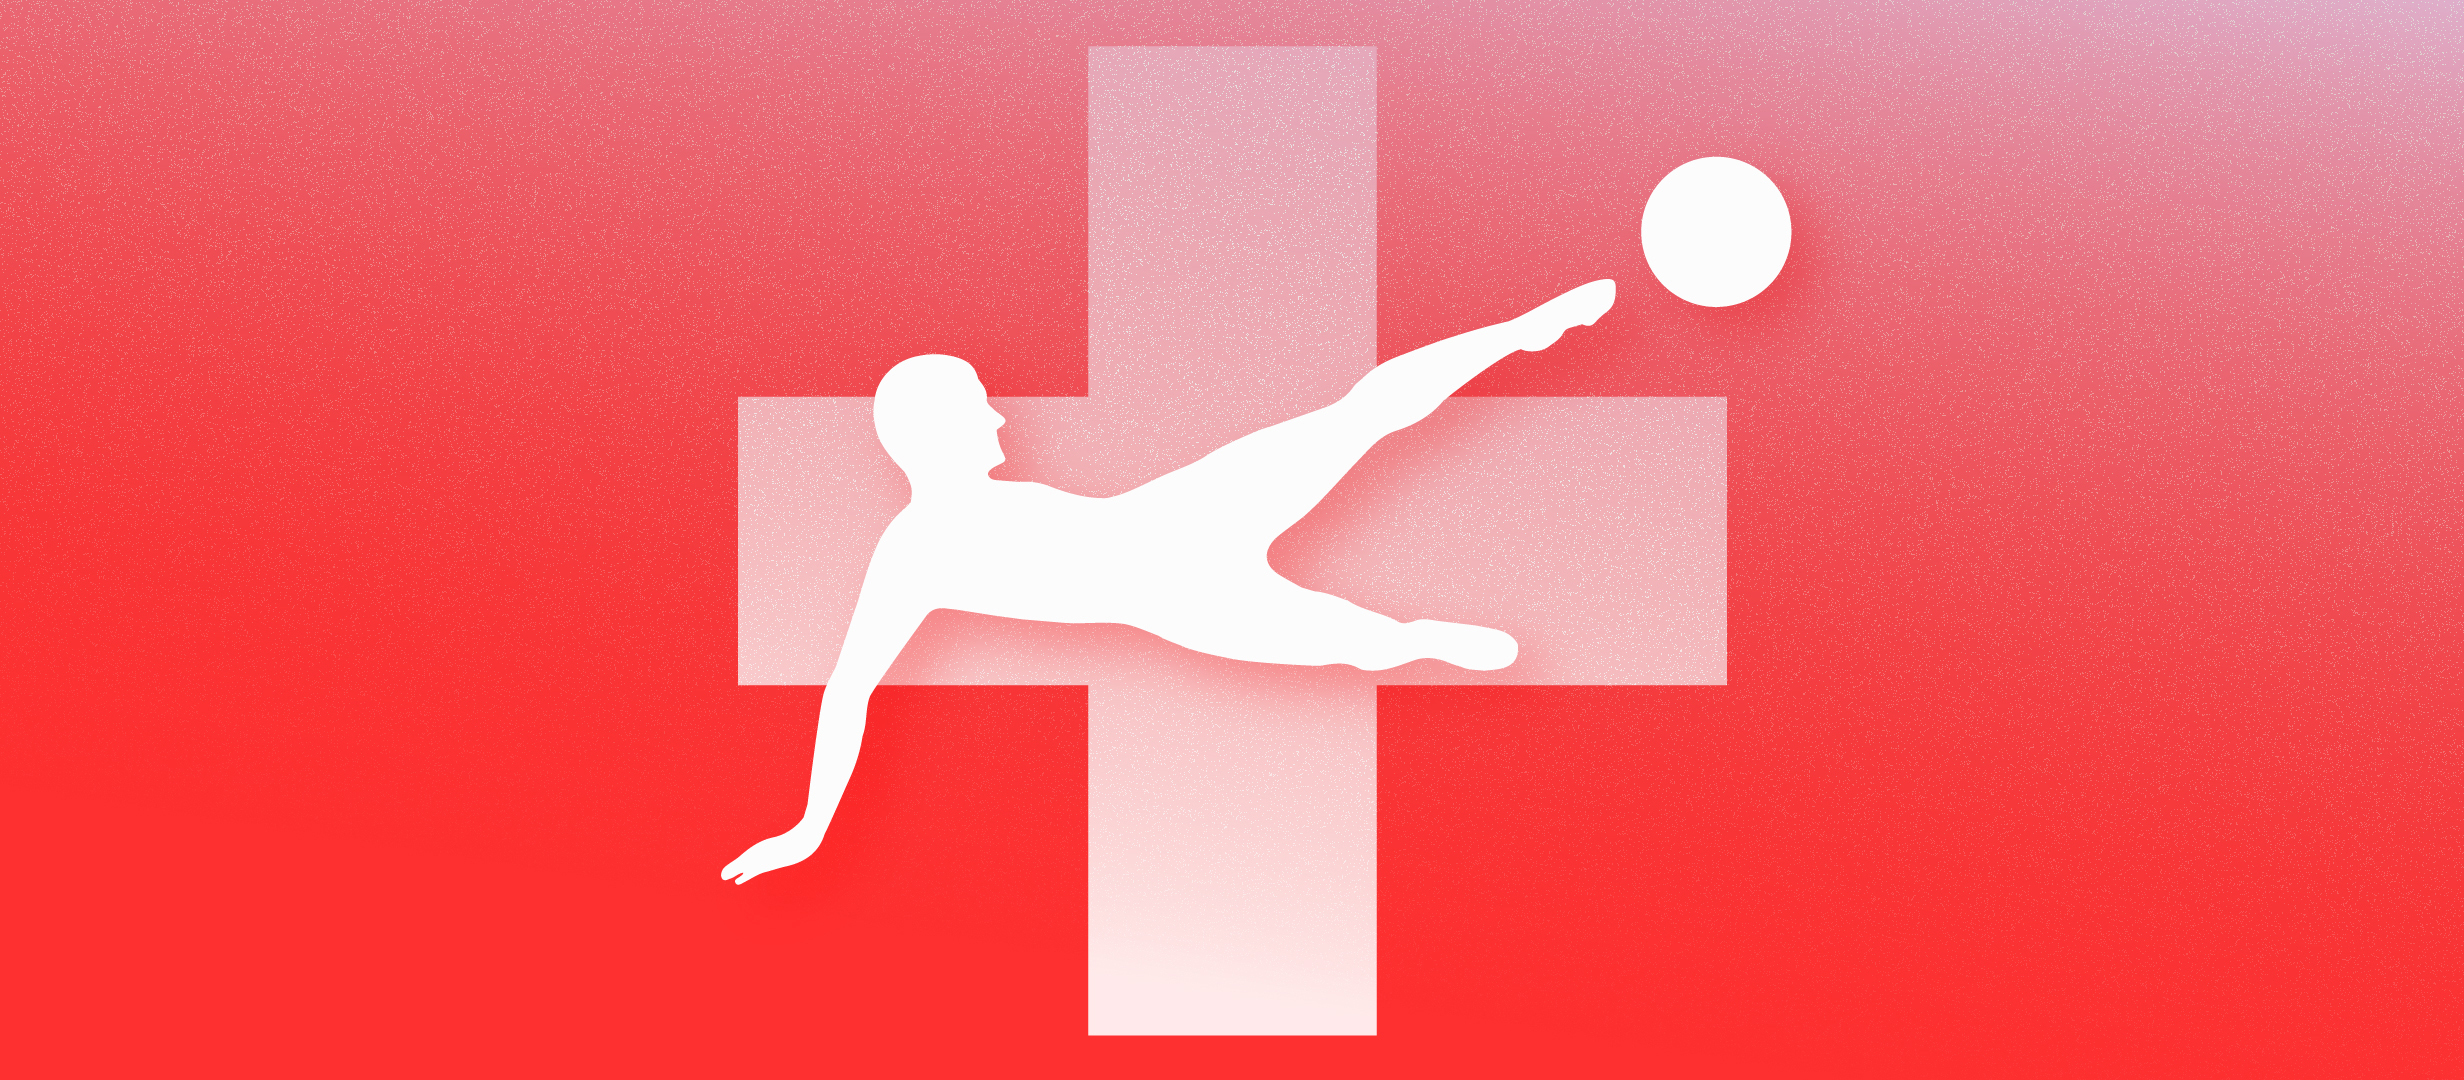 Надёжный тренд на голы в чемпионате Швейцарии по футболу